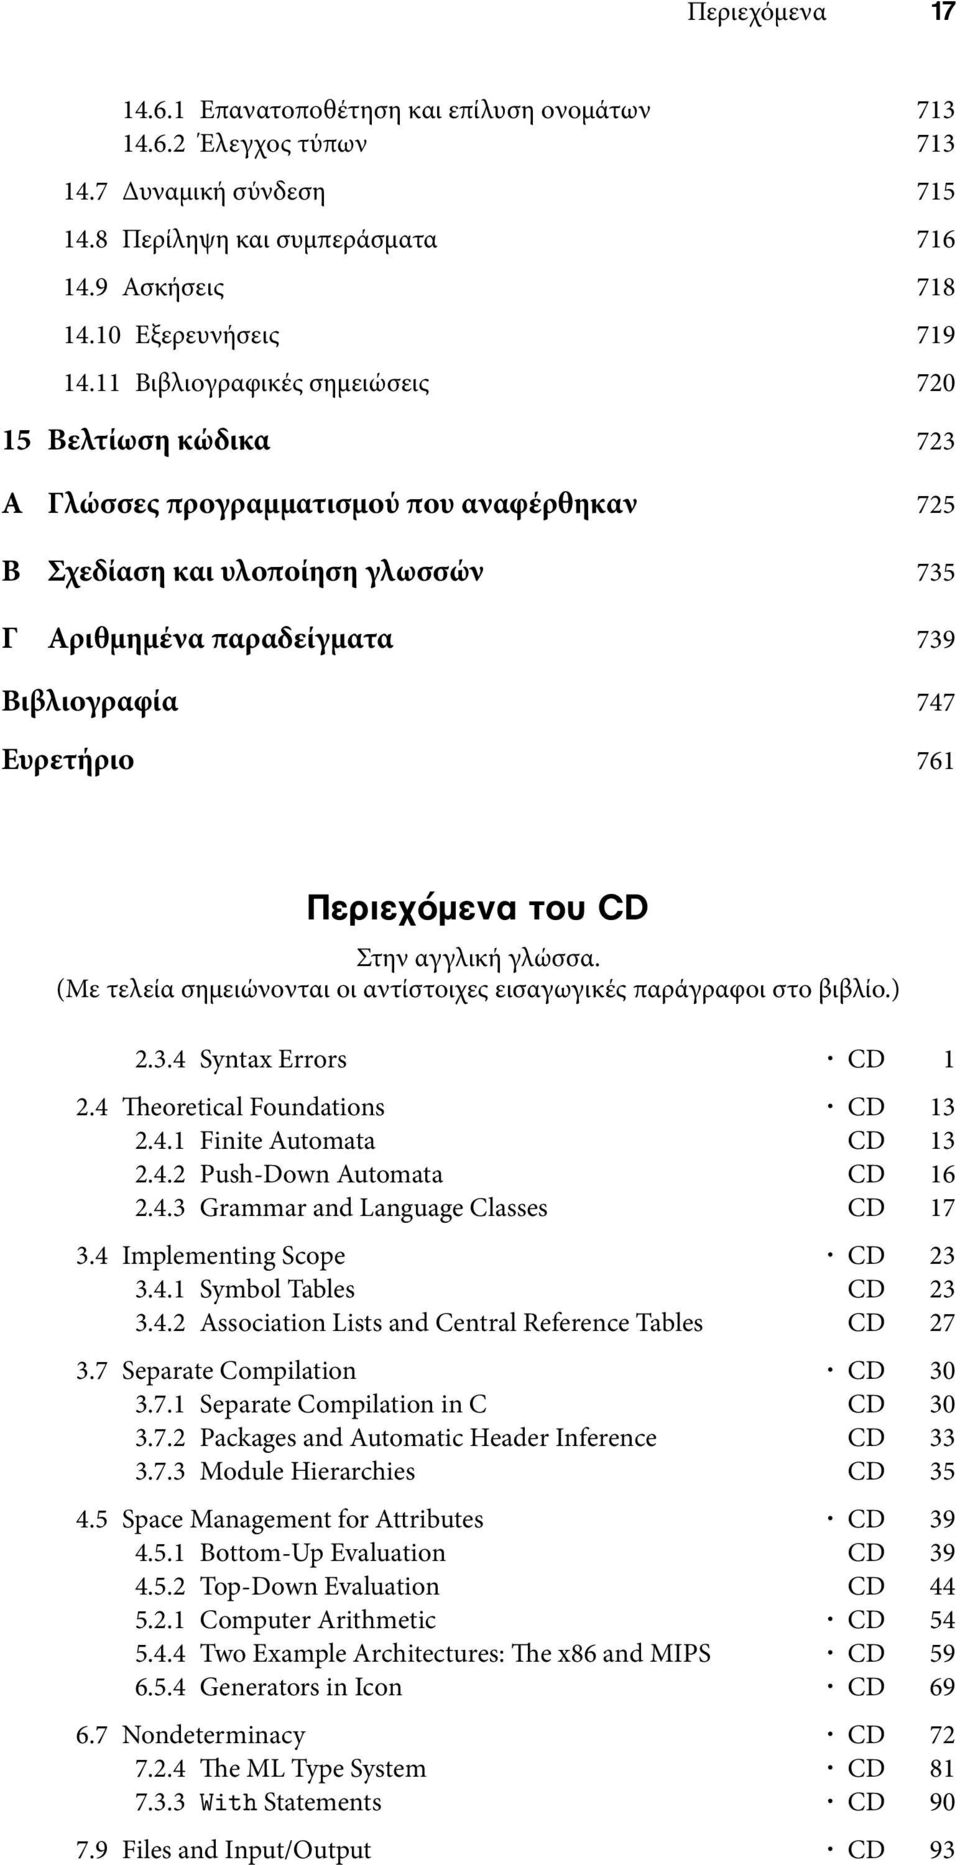 Περιεχόμενα του CD Στην αγγλική γλώσσα. (Με τελεία σημειώνονται οι αντίστοιχες εισαγωγικές παράγραφοι στο βιβλίο.) 2.3.4 Syntax Errors CD 1 2.4 eoretical Foundations CD 13 2.4.1 Finite Automata CD 13 2.